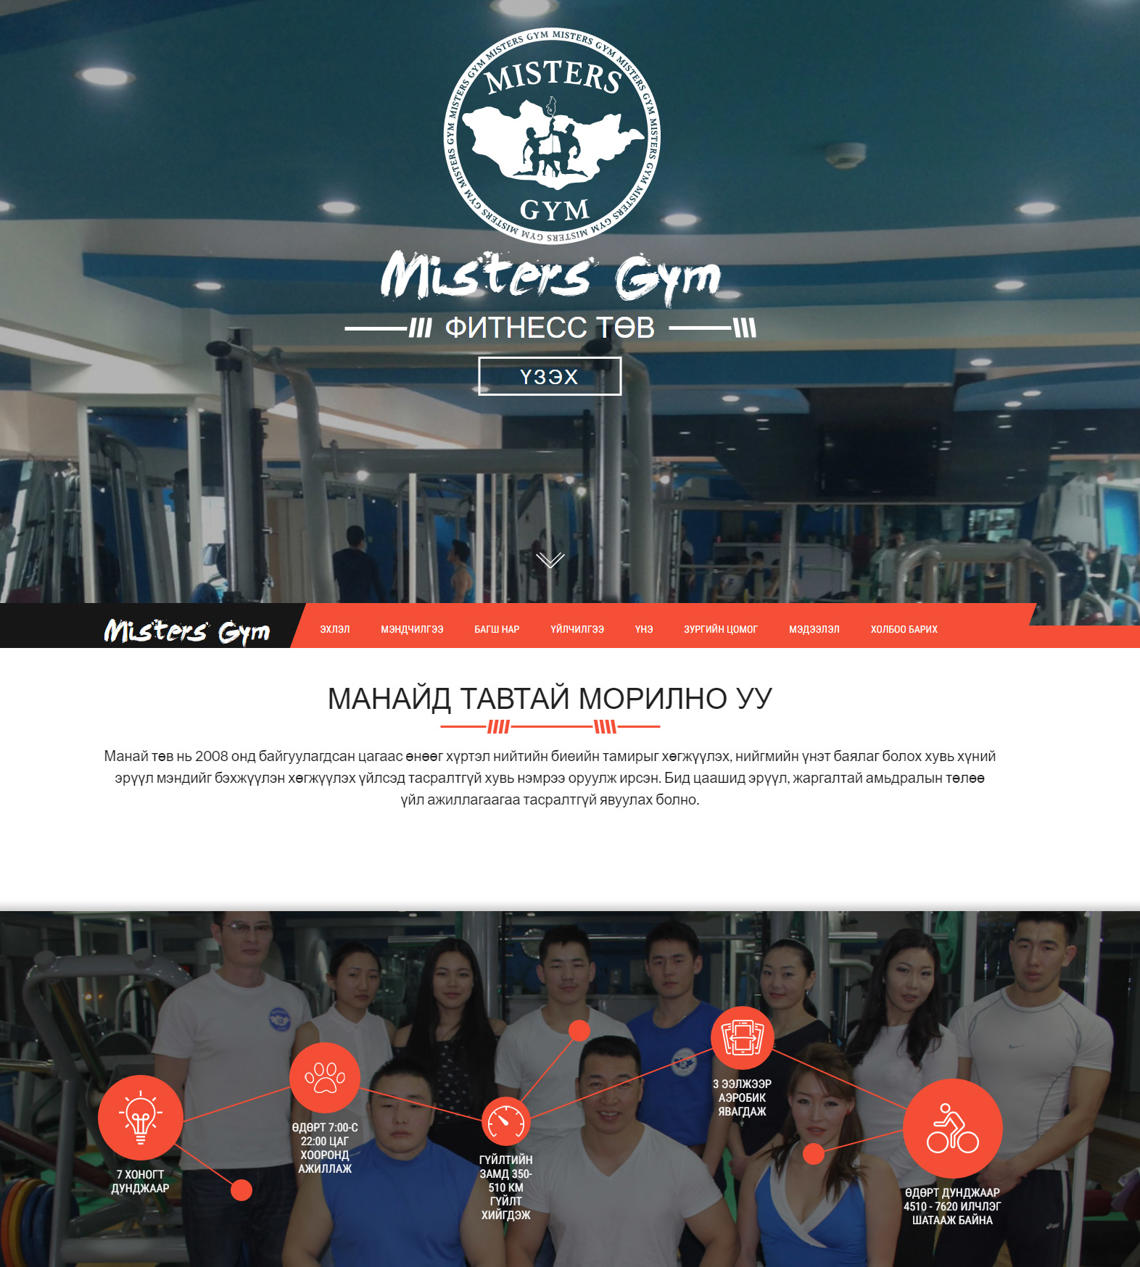 Mistersgym клубын вэб сайт